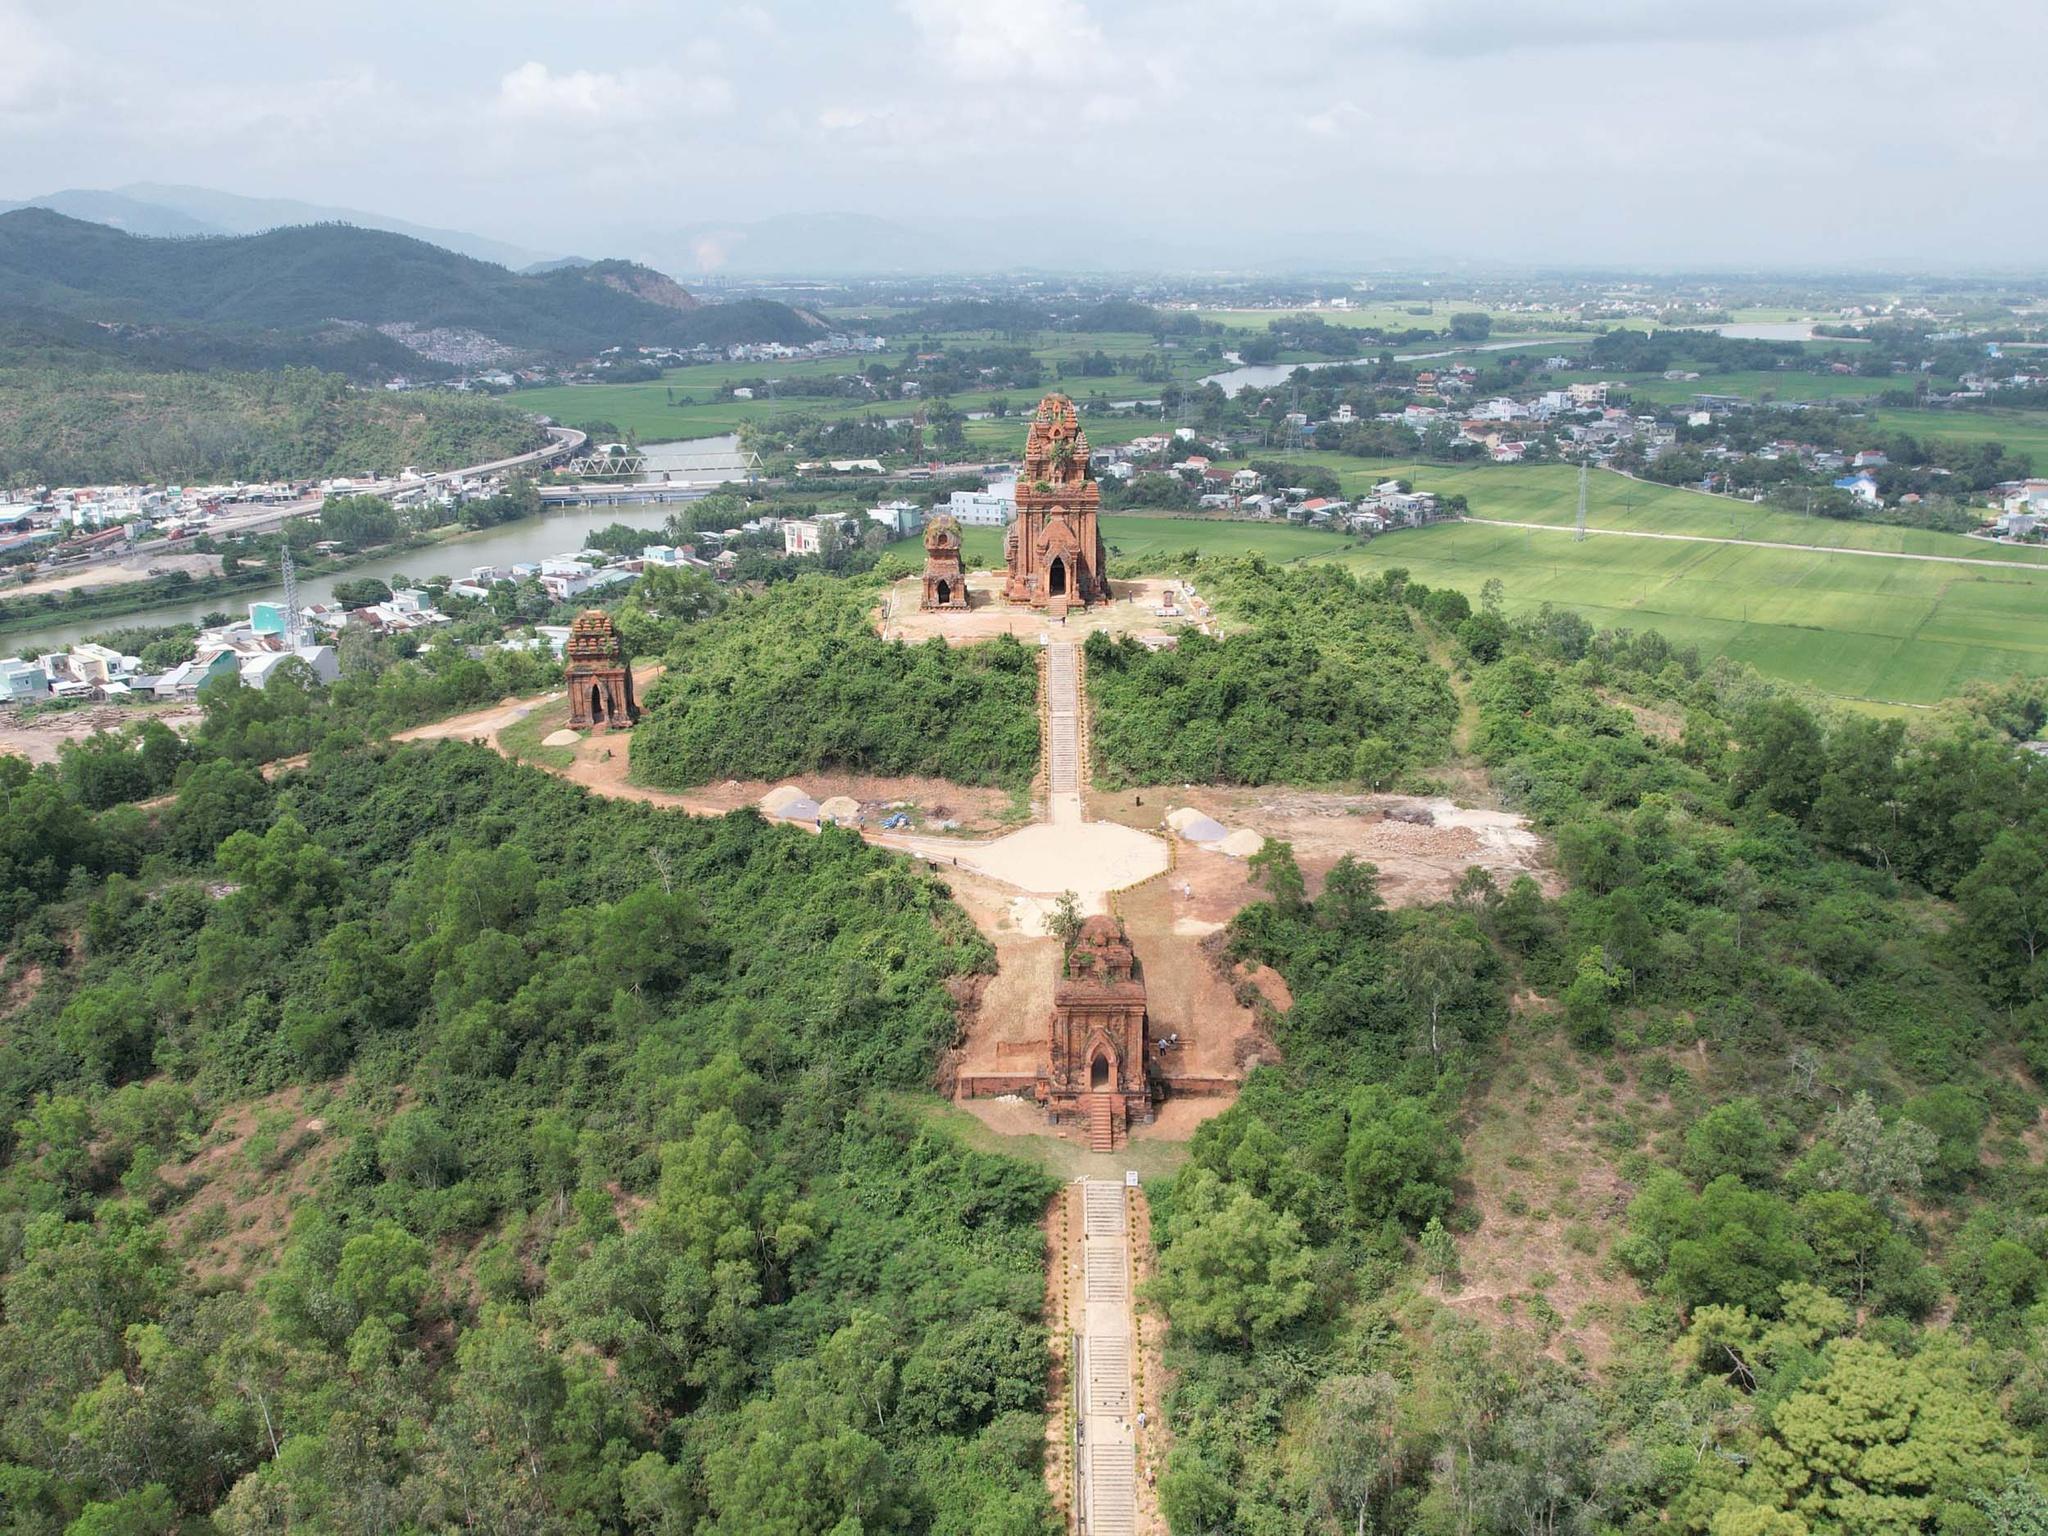 Dự án tu bổ tháp Bánh Ít ở Bình Định: Biết thi công sai vẫn cho làm? - ảnh 1